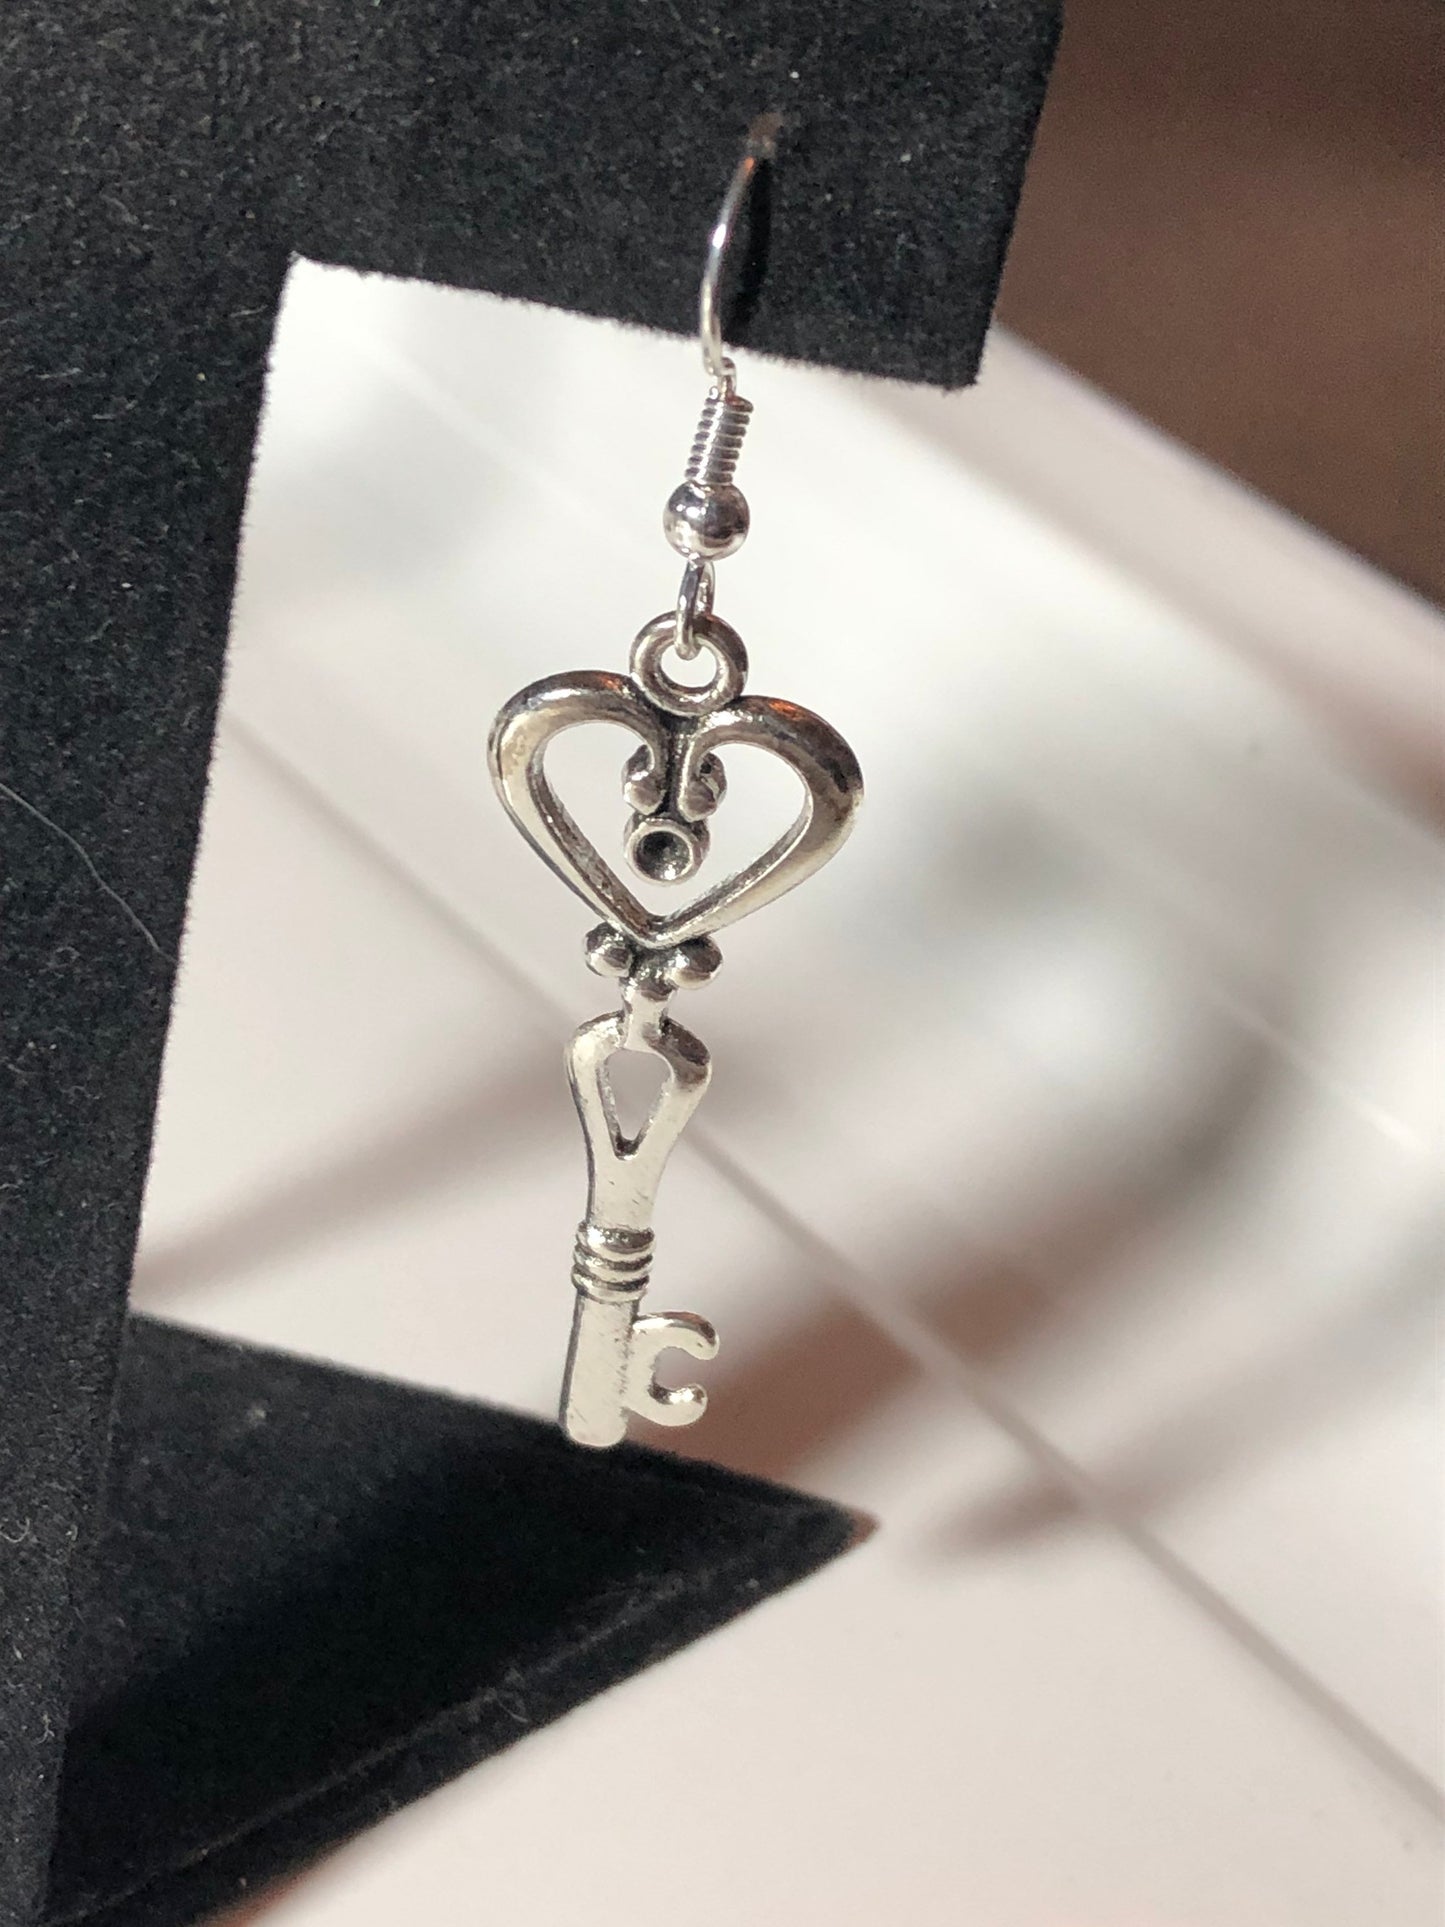 silver tone Victorian style antique key earrings pierced ears